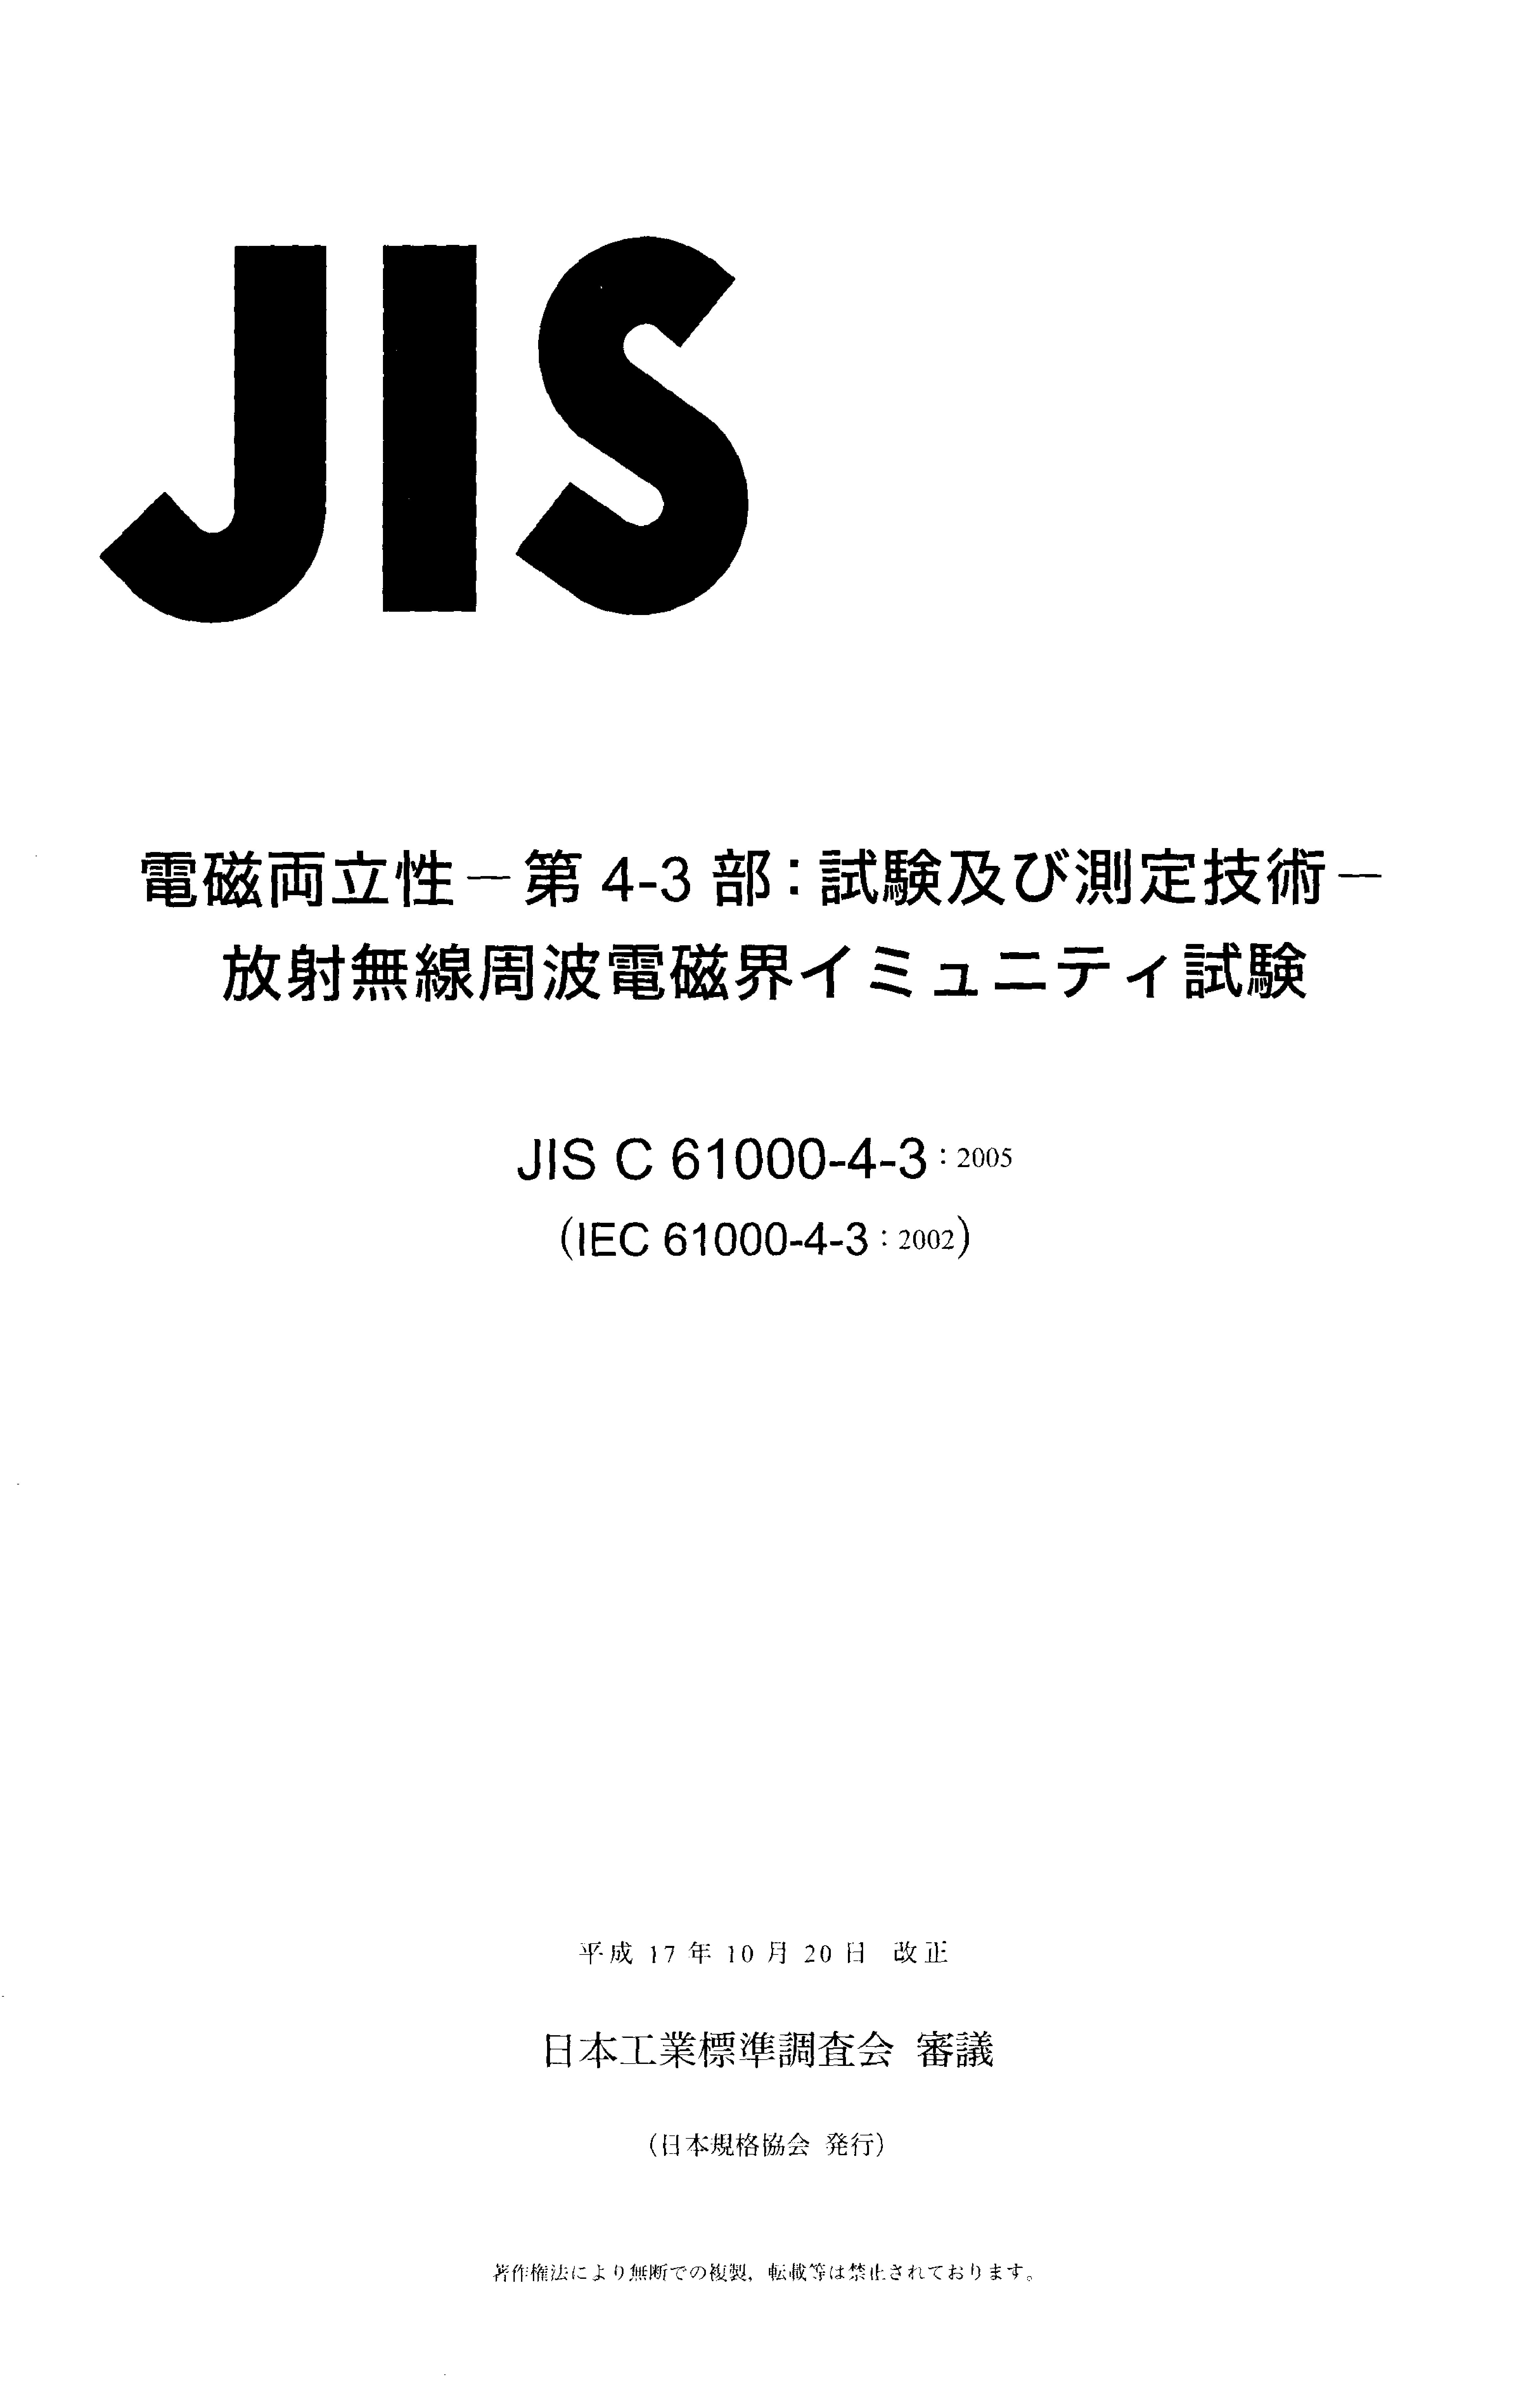 JIS C 61000-4-3:2005